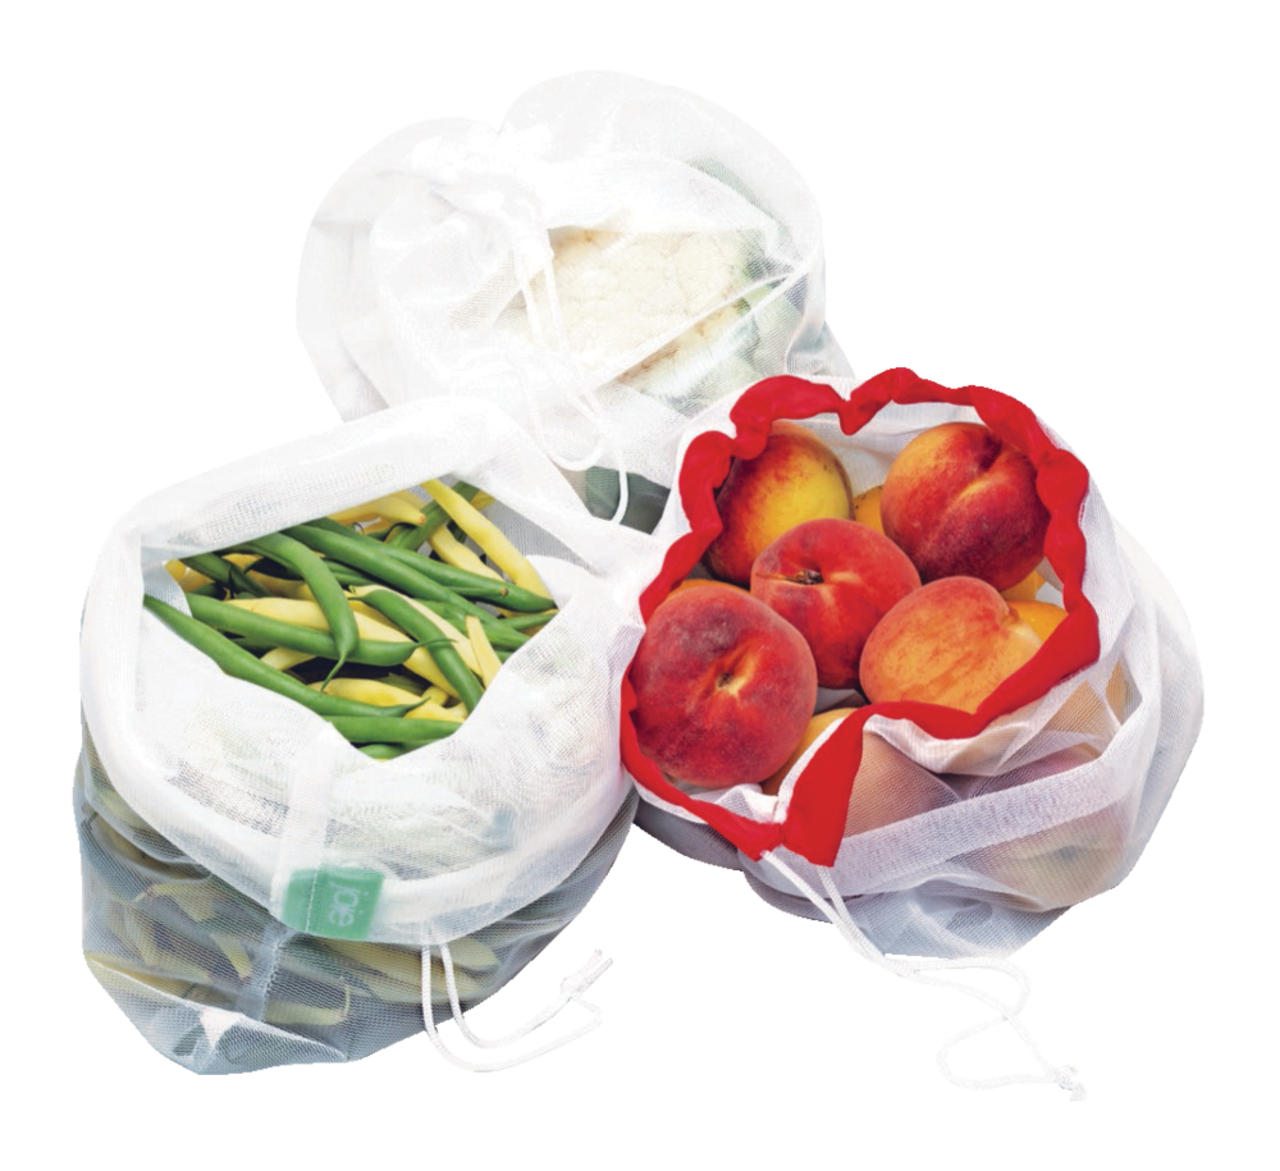 6 Pc Reusable Produce Bags, Cotton Mesh Vegetable Bag Eco Friendly